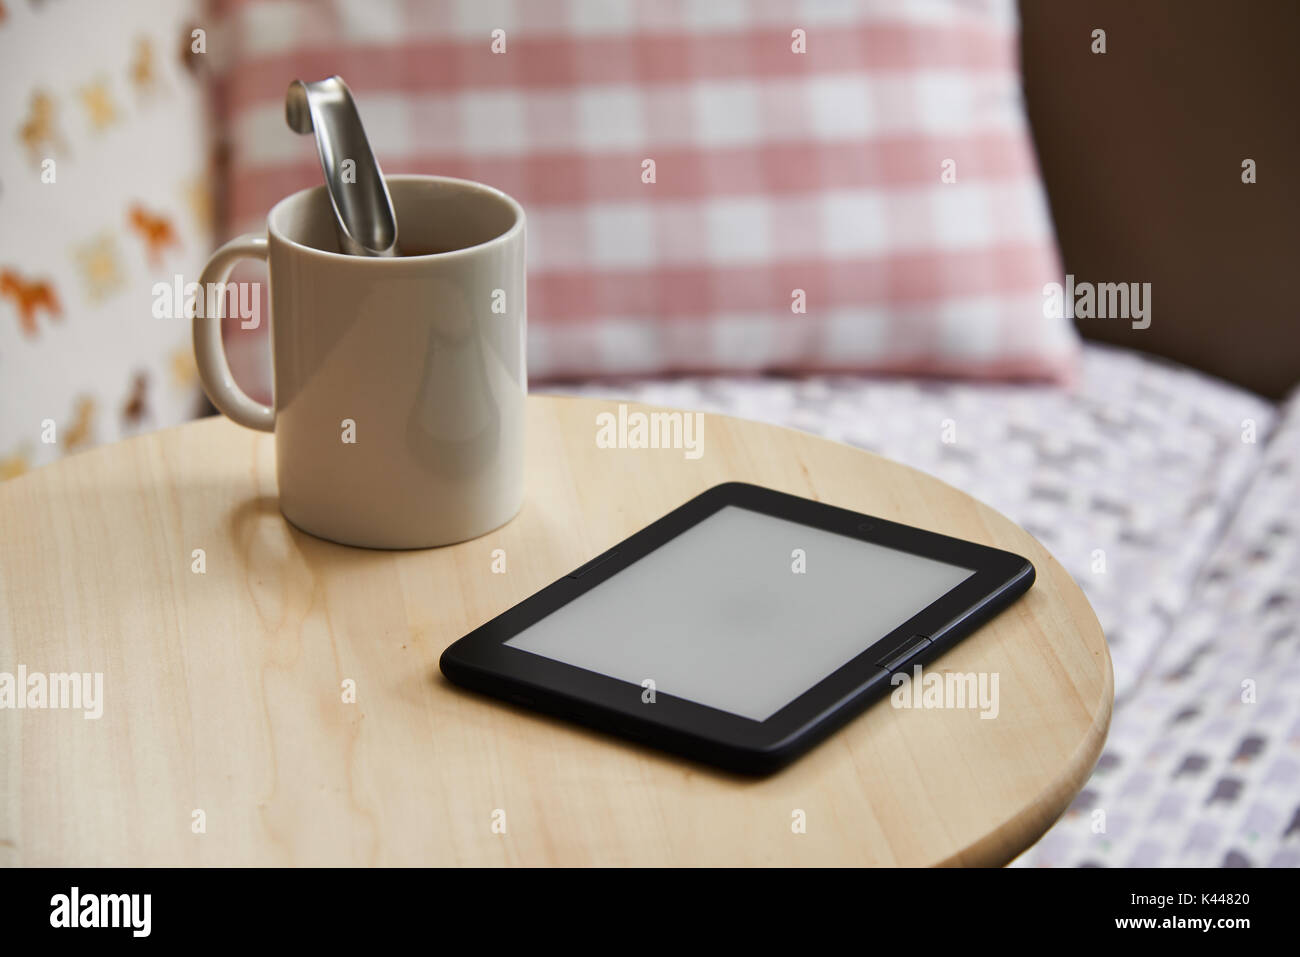 Ebook appareil avec écran vide sur une table. L'e-book est un appareil dédié pour la lecture des e-books. Banque D'Images